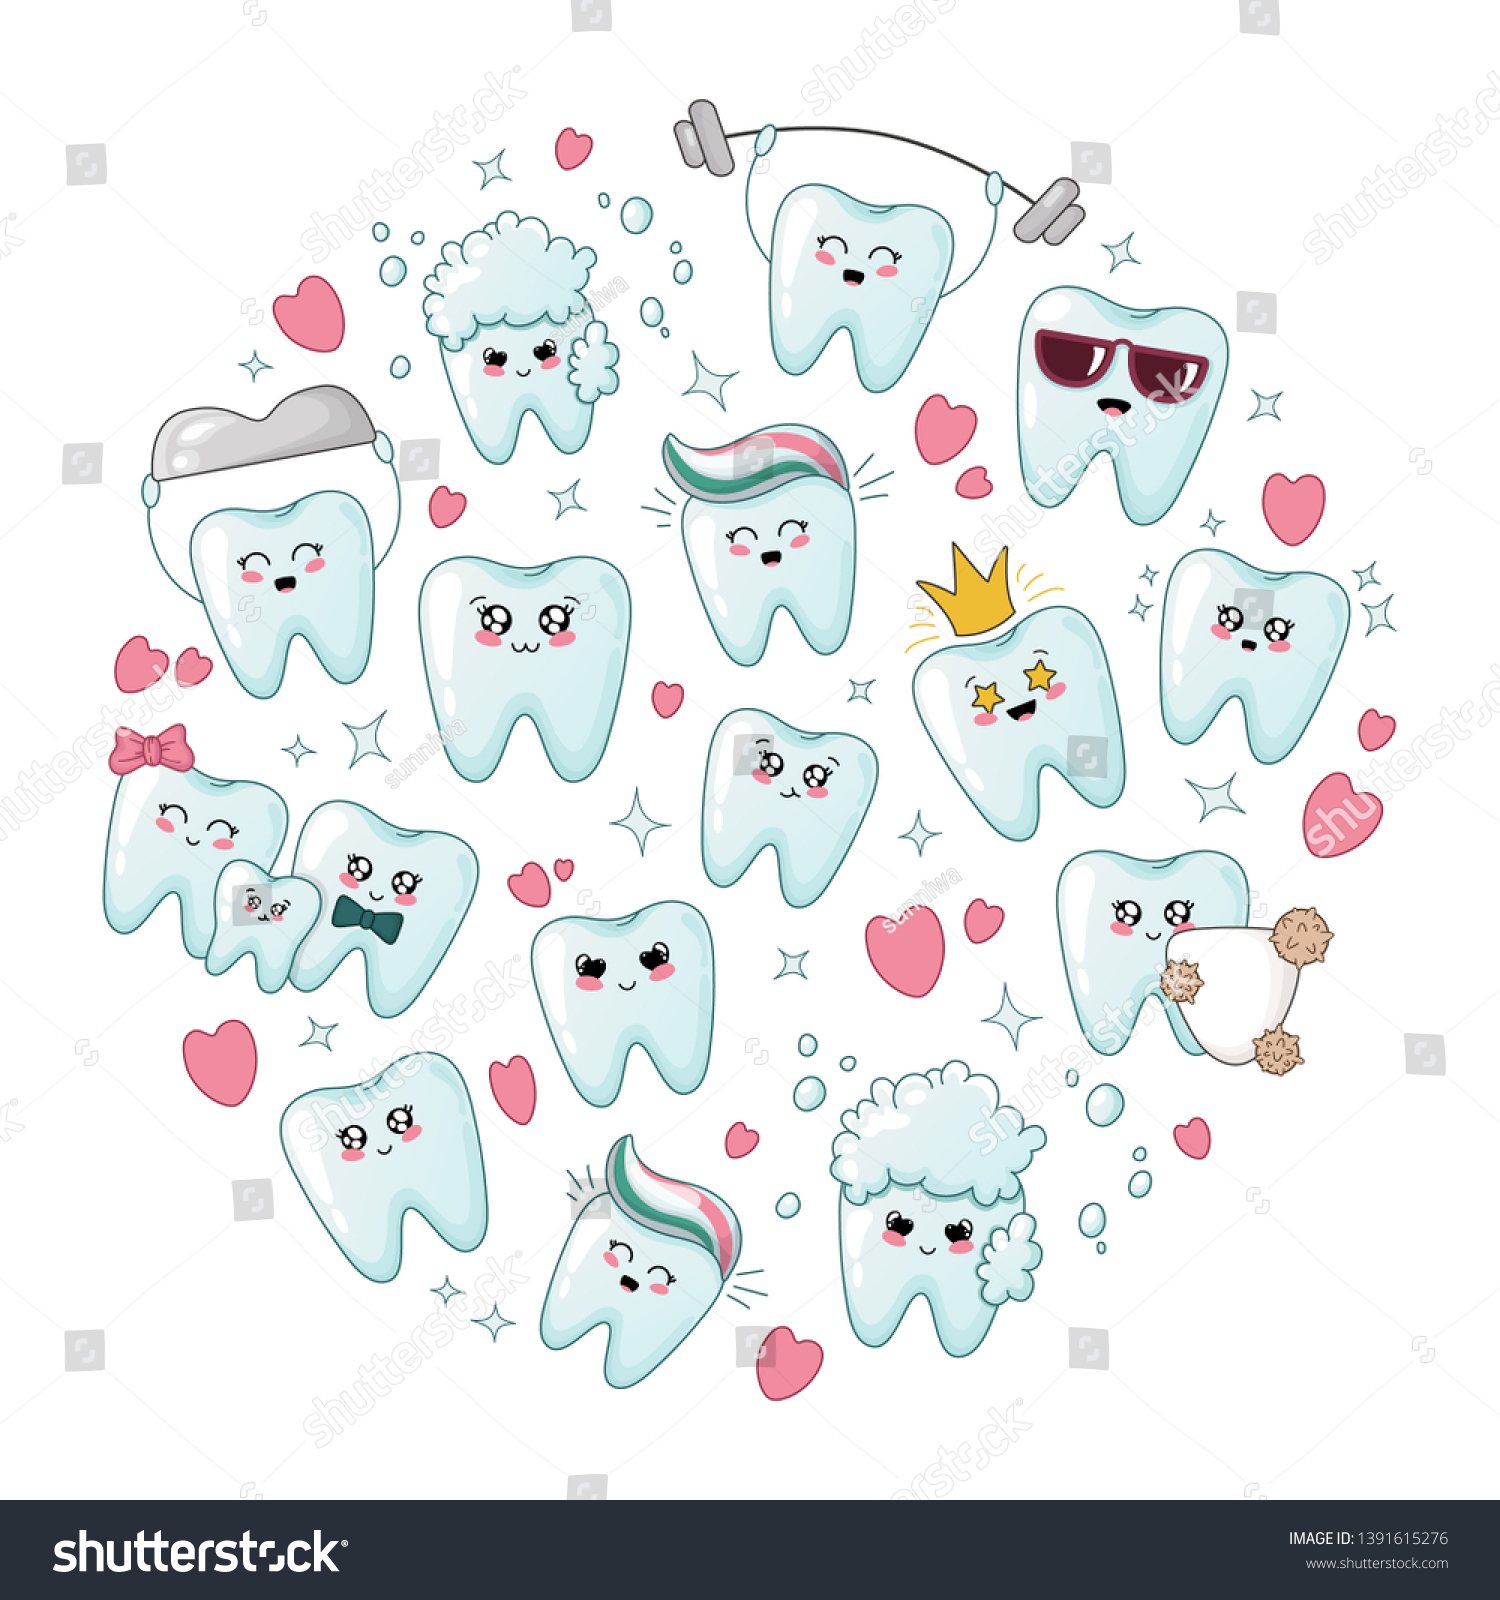 絵文字が違うかわいい健康歯 丸い組成の歯 漫画のキャラクター 治療と口腔衛生 歯科ケアのコンセプト ベクターフラットイラスト のベクター画像素材 ロイヤリティフリー